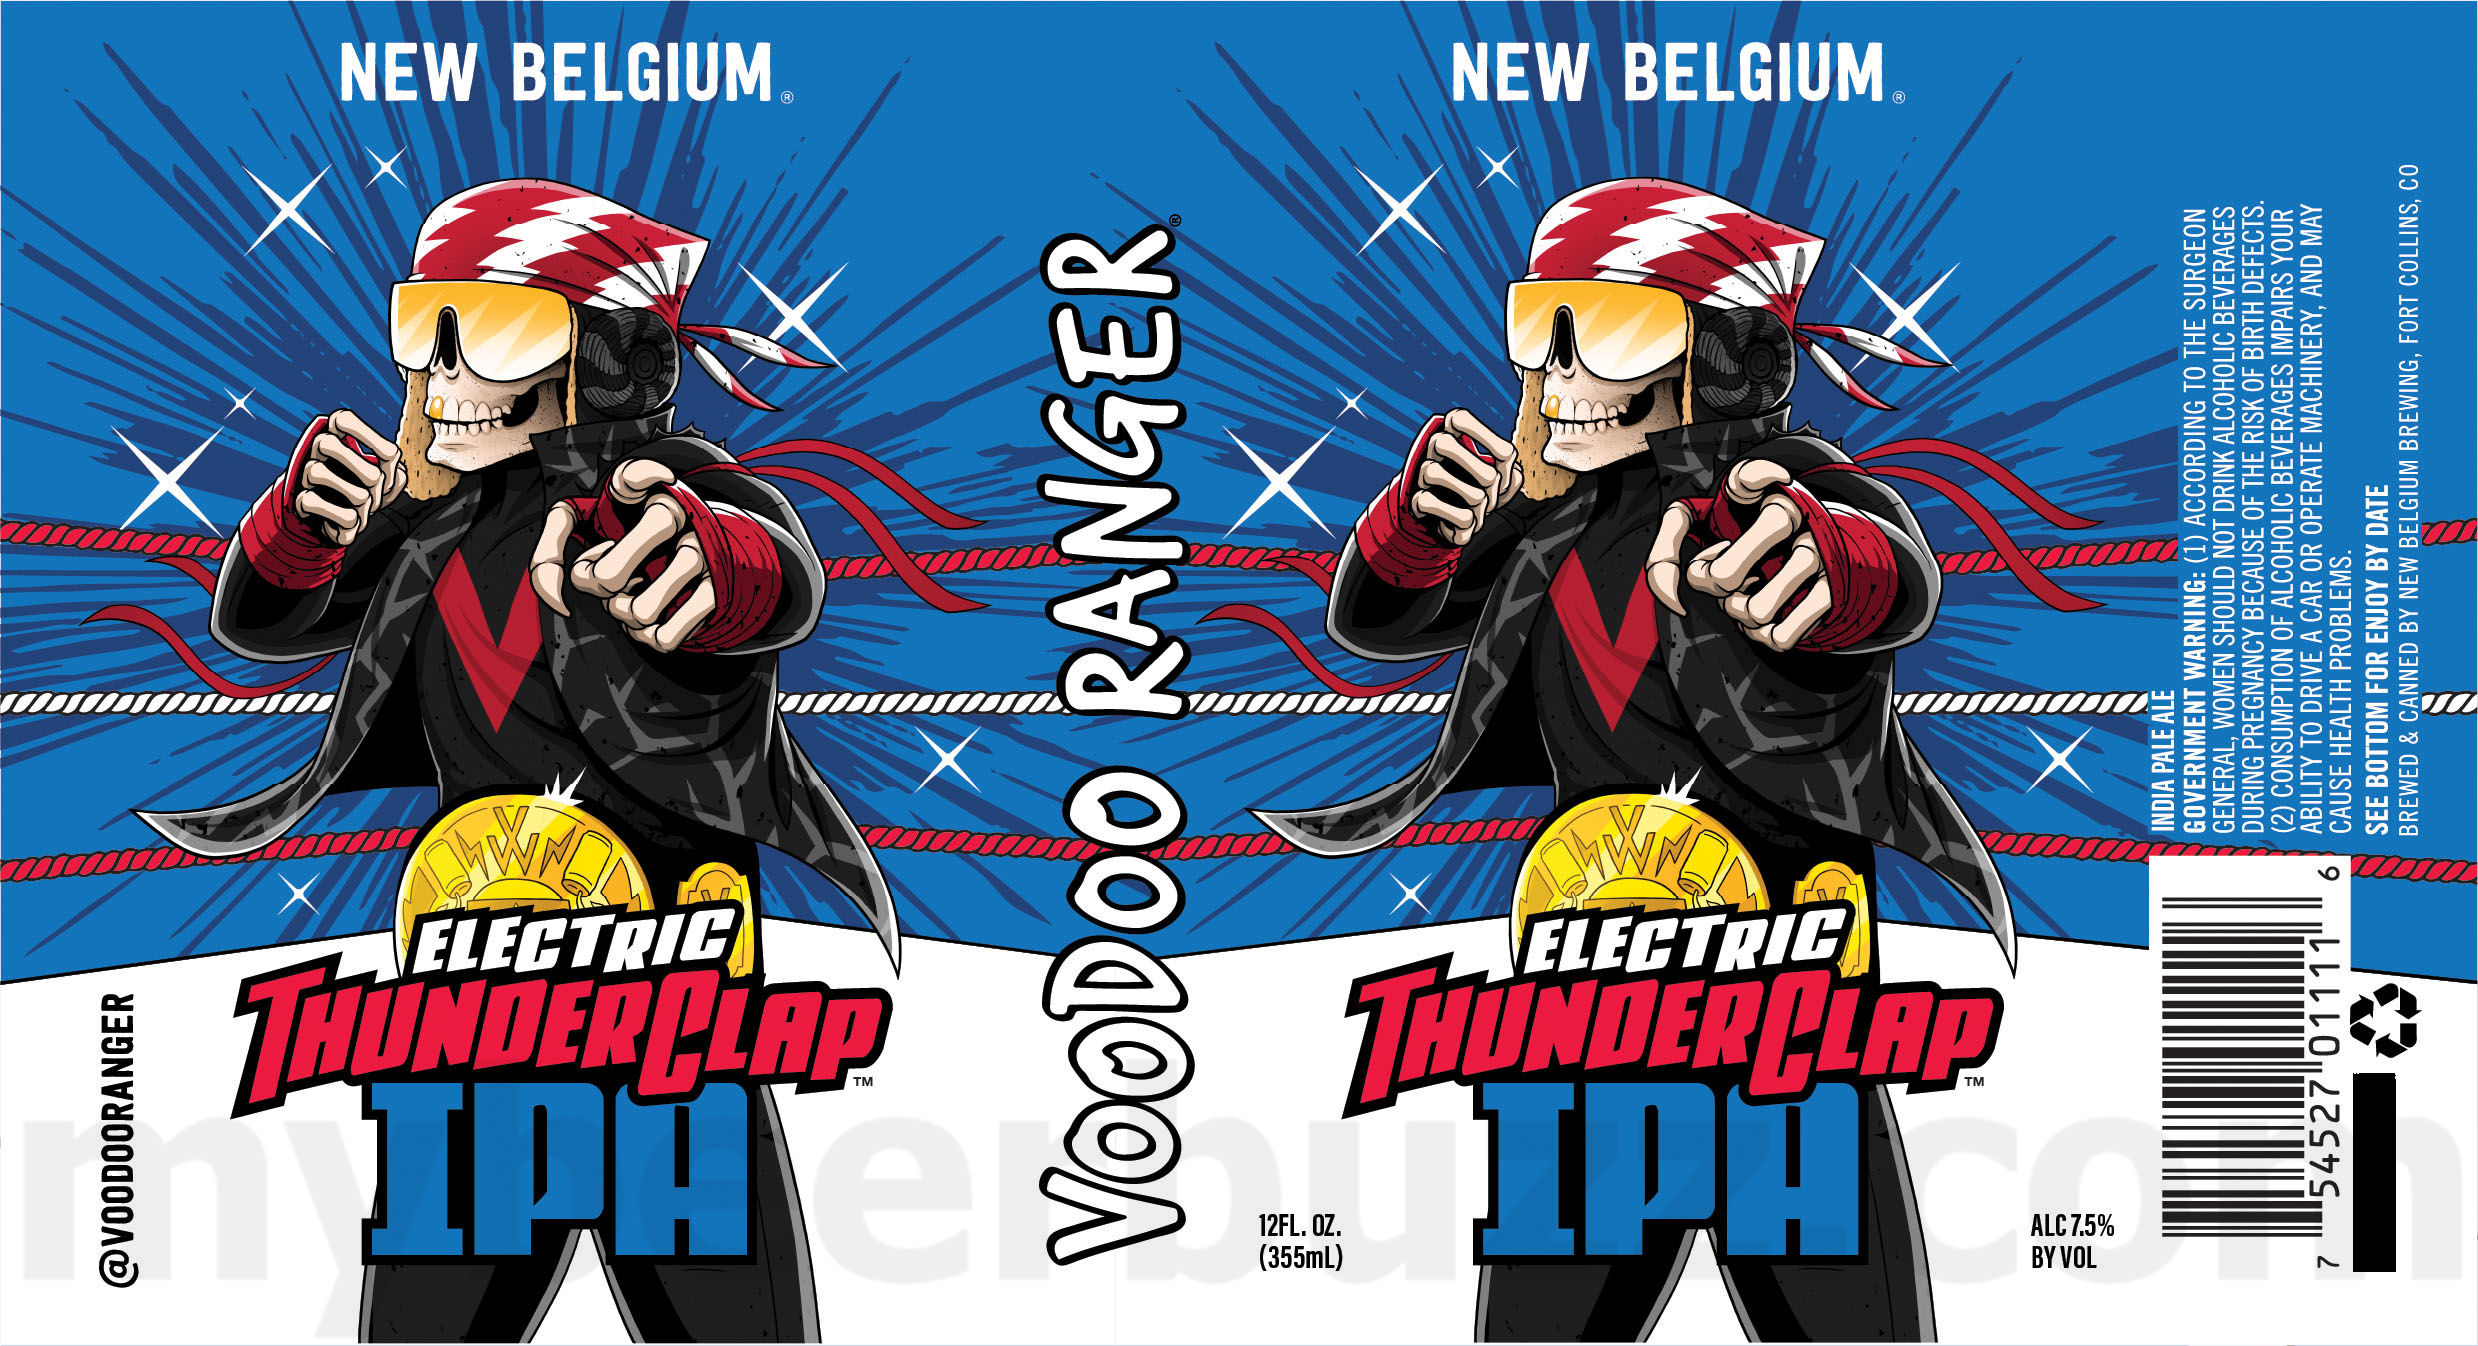 New Belgium Working On Voodoo Ranger Electric Thunderclap IPA & Voodoo Ranger Blaze Lightning IPA